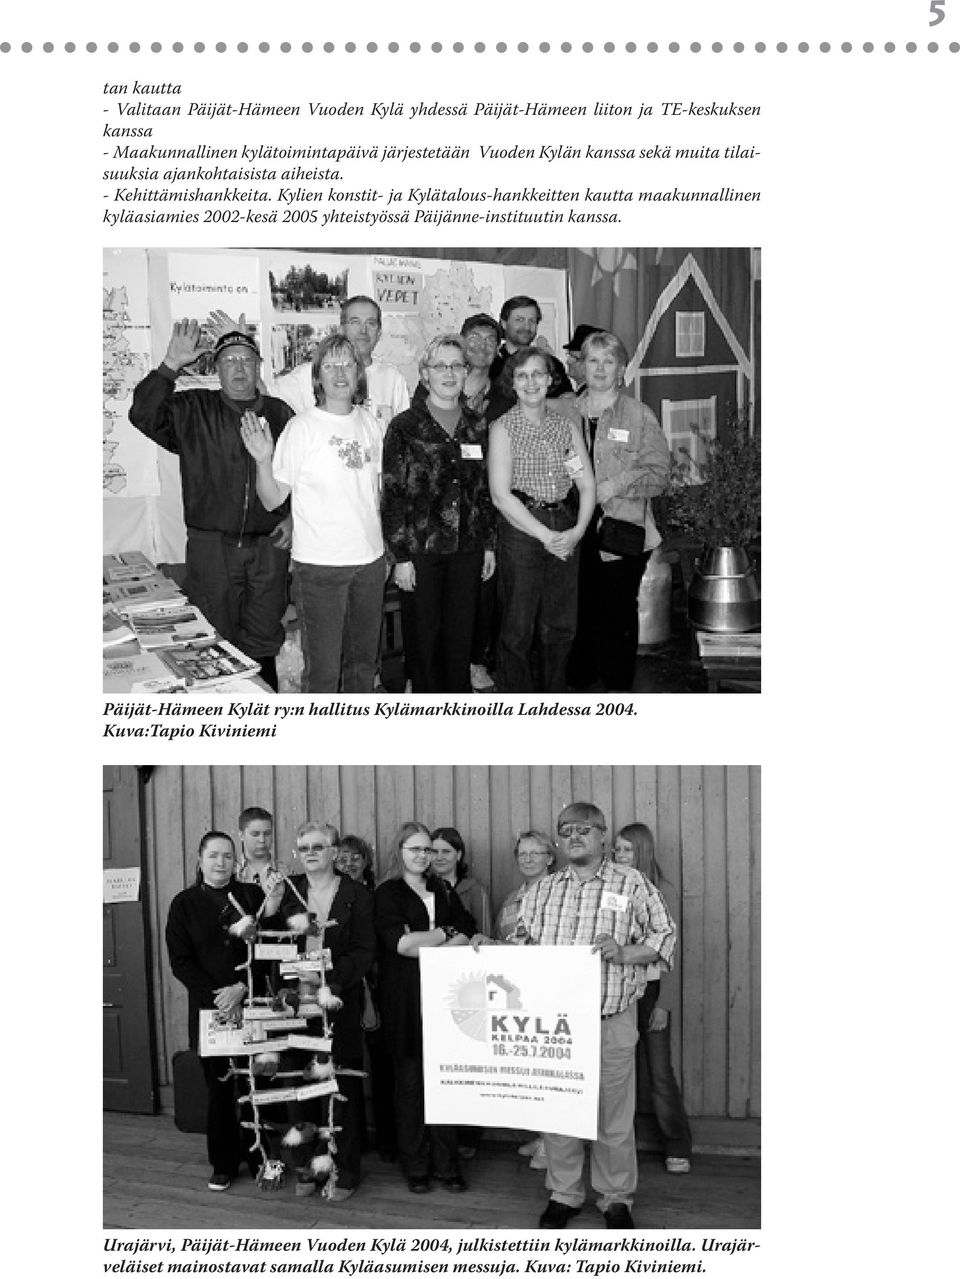 Kylien konstit- ja Kylätalous-hankkeitten kautta maakunnallinen kyläasiamies 2002-kesä 2005 yhteistyössä Päijänne-instituutin kanssa.